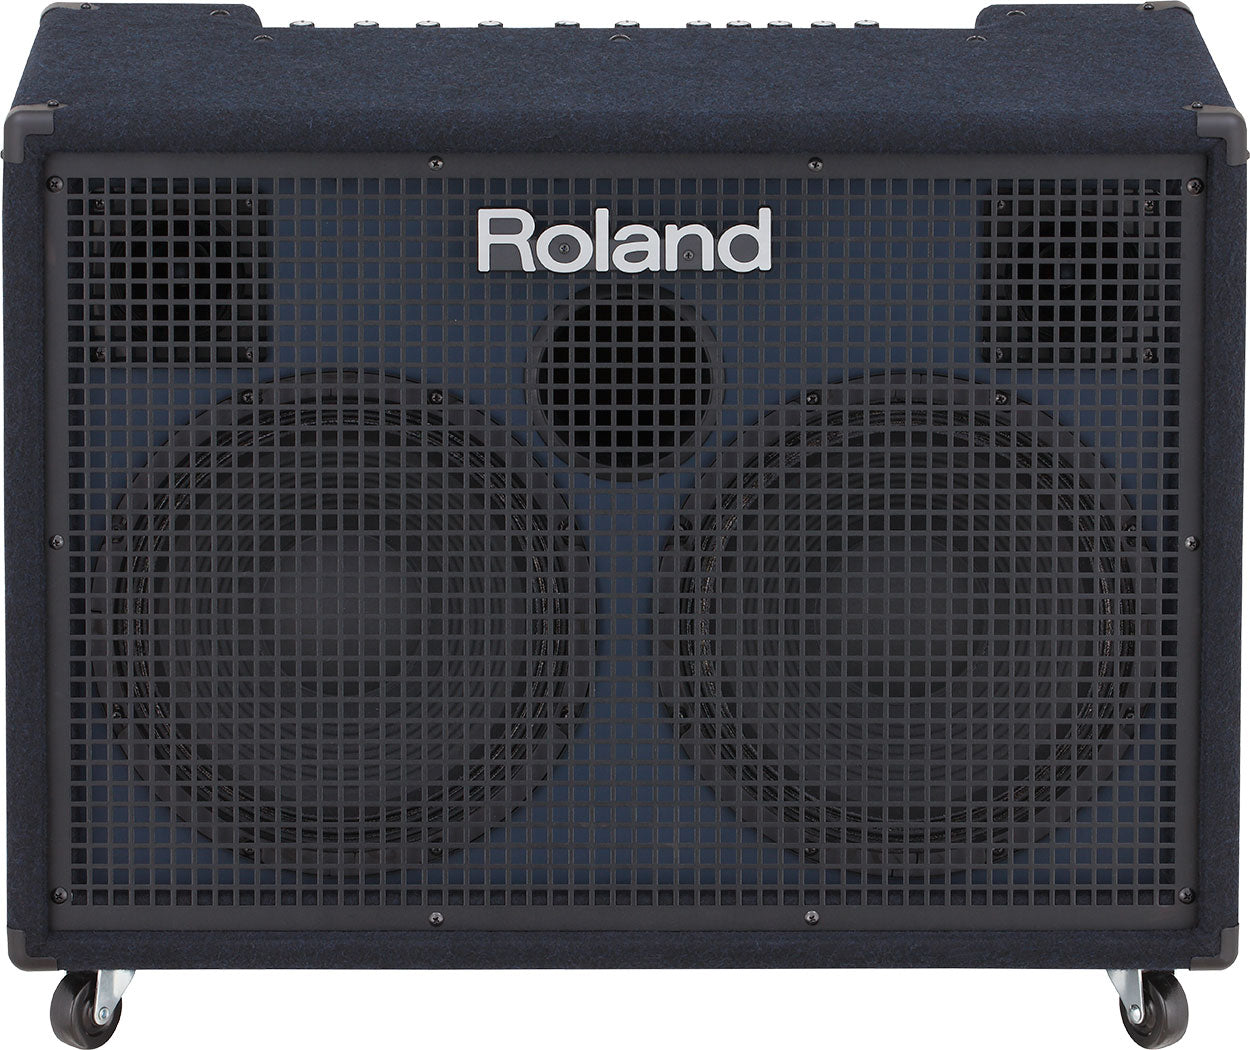 Roland KC-990 2x12" 320W Keyboard Amplifier